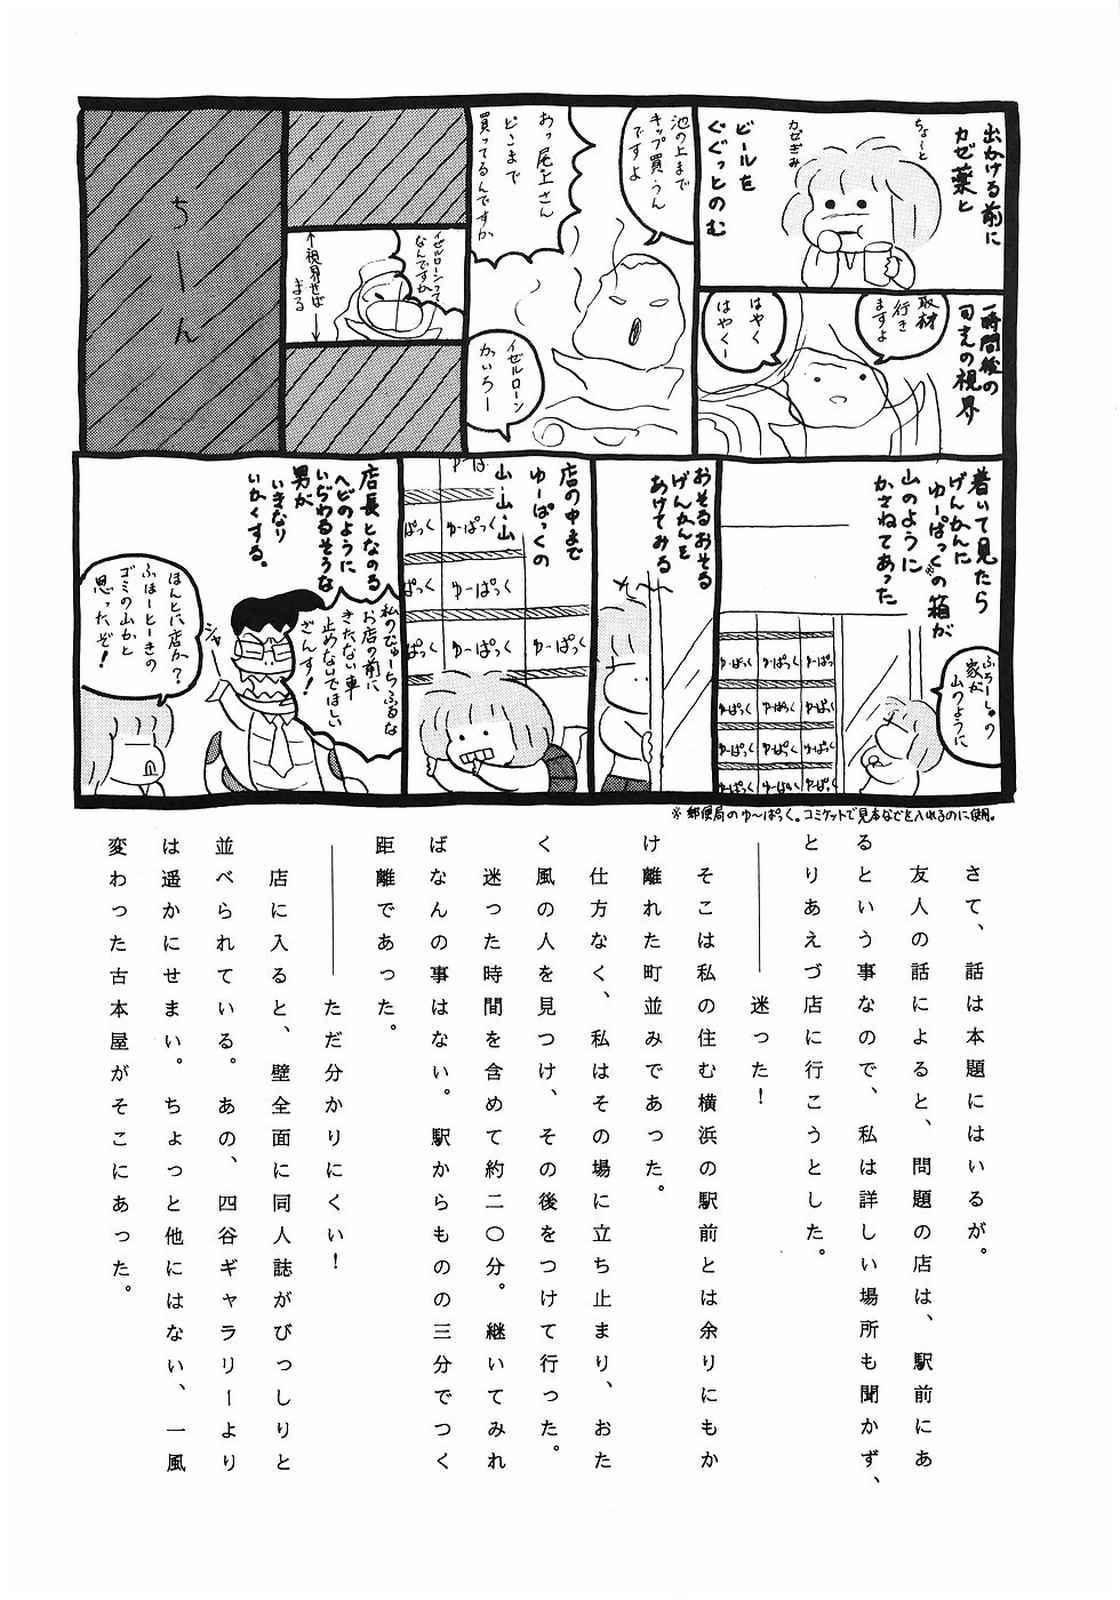 [美色アカデミィー＆関東司組 (Various)] Bi-shoku Academy Vol.1 (Various) page 37 full